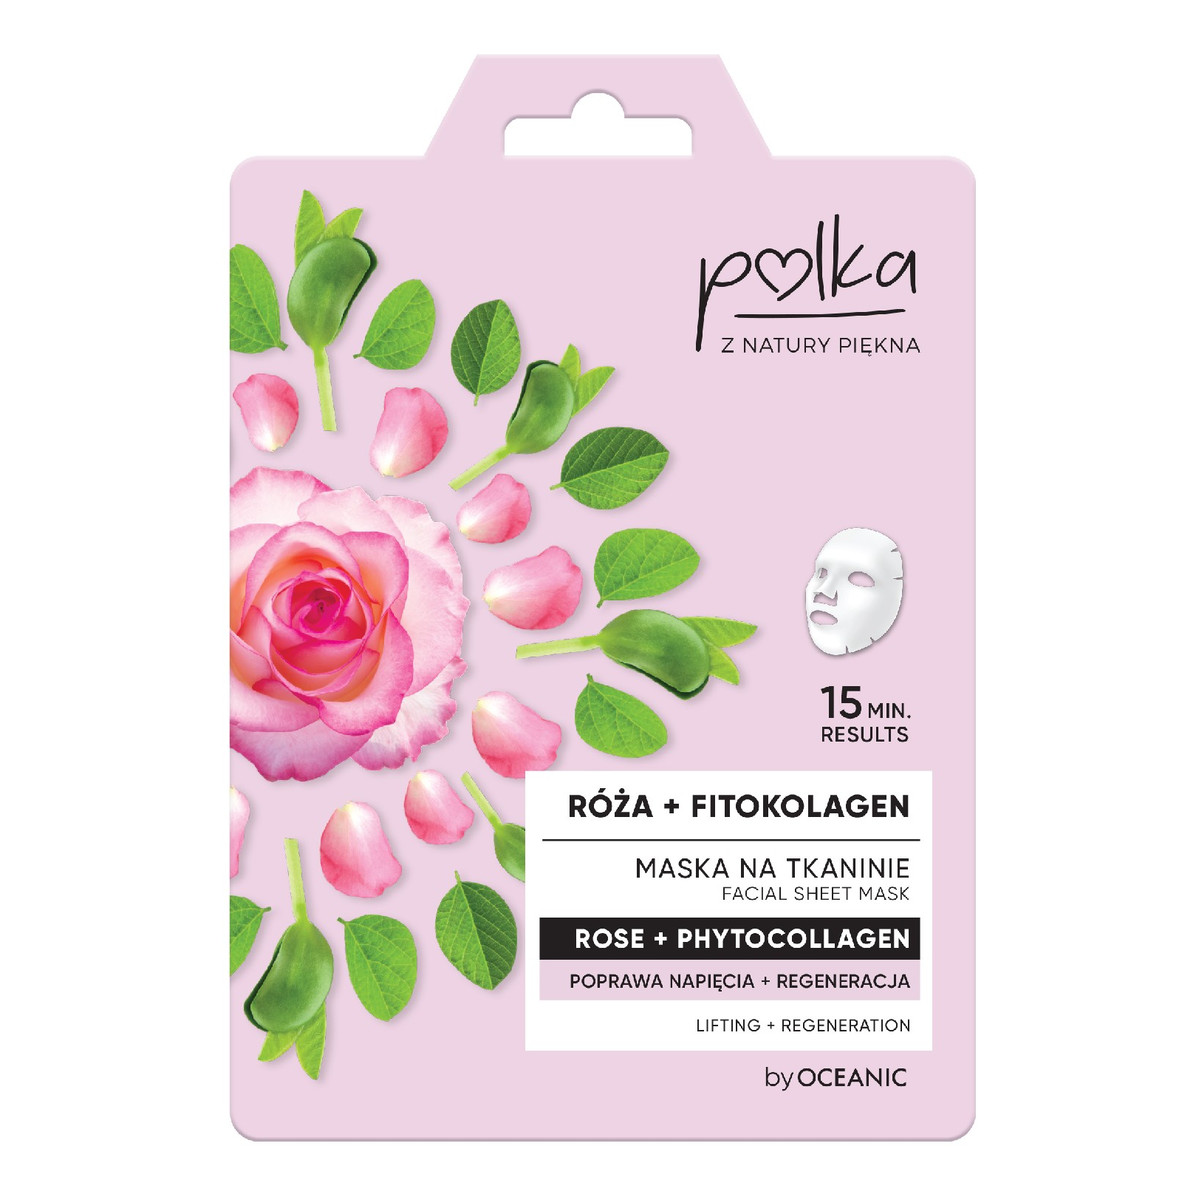 Polka Maska na tkaninie Róża + Fitokolagen poprawa napięcia + regeneracja